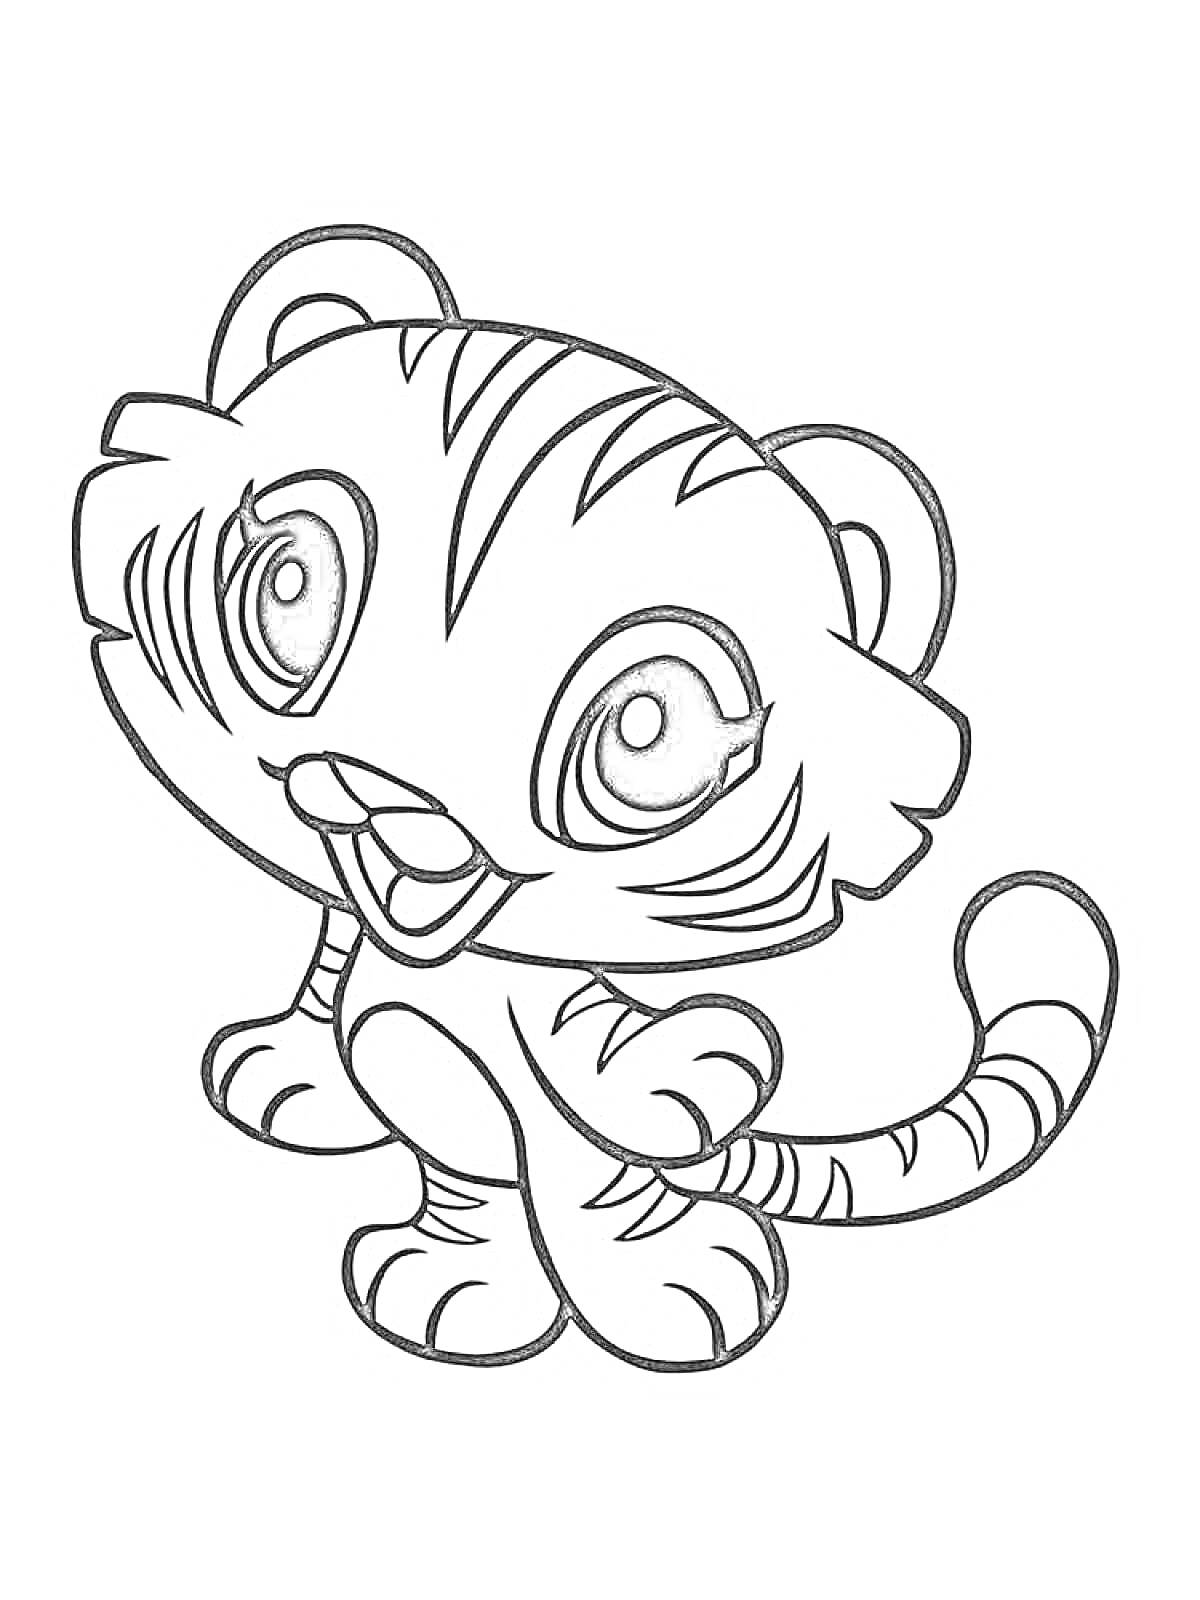 Раскраска Милый тигрёнок с большими глазами и полосками